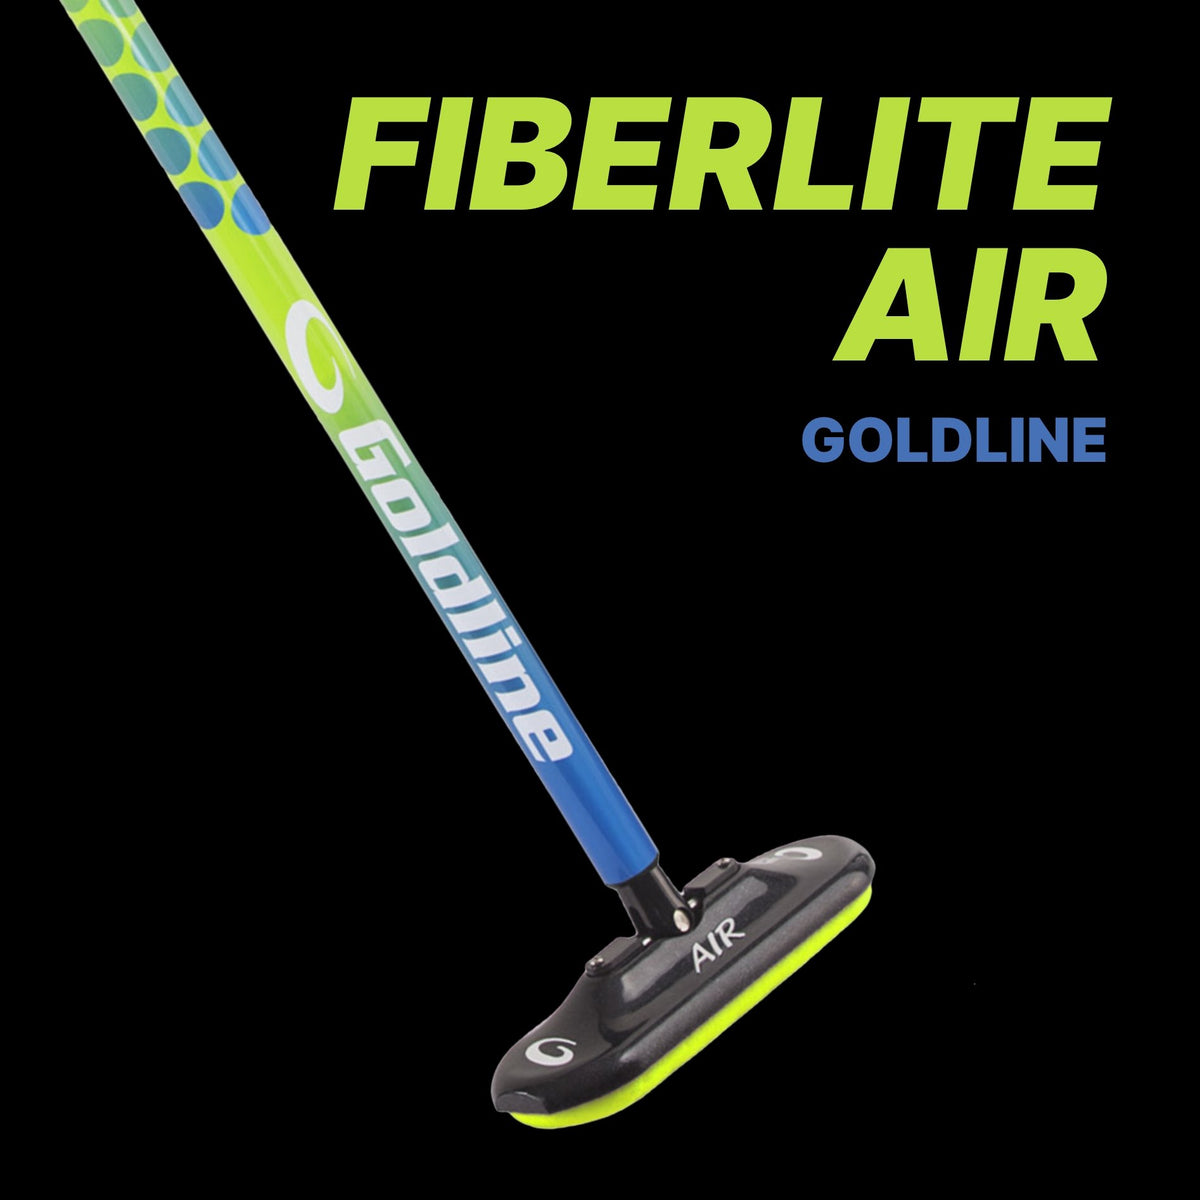 Goldline Fiberlite Air Curling Broom